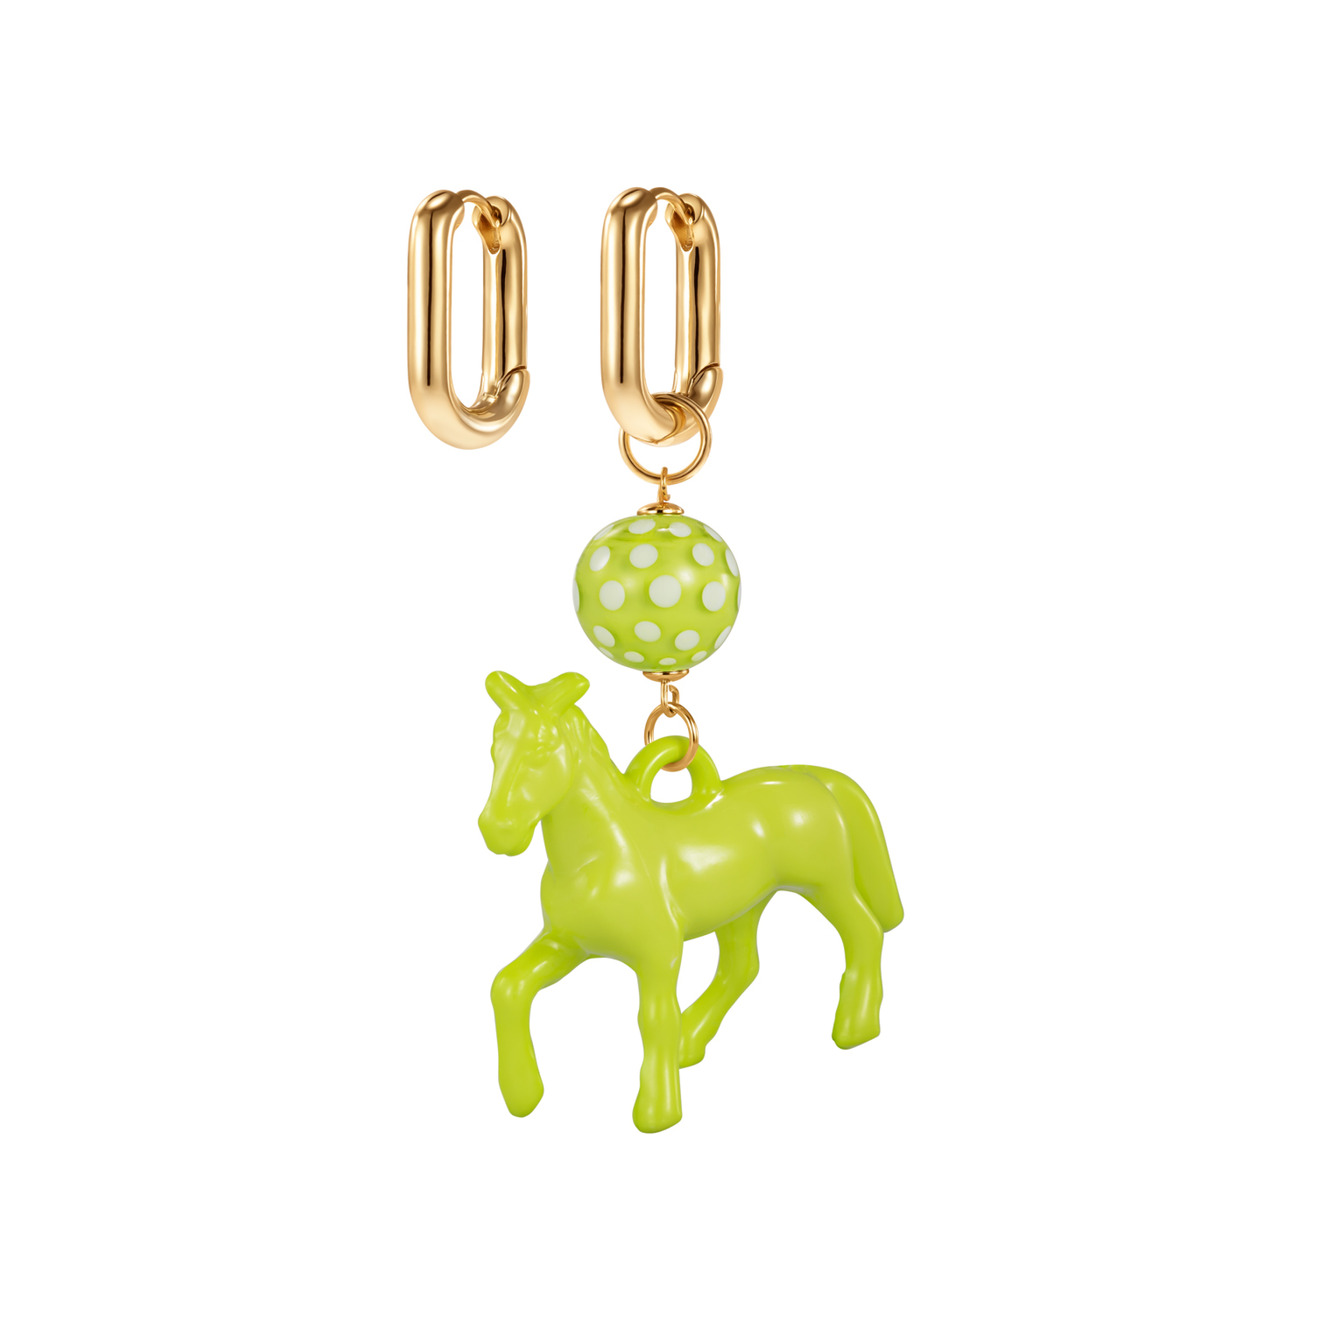 Kotlo Studio Серьги с зеленой лошадкой и бусиной Мурано kotlo studio prince charming gold золотистые серьги с белой лошадкой и голубой бусиной мурано